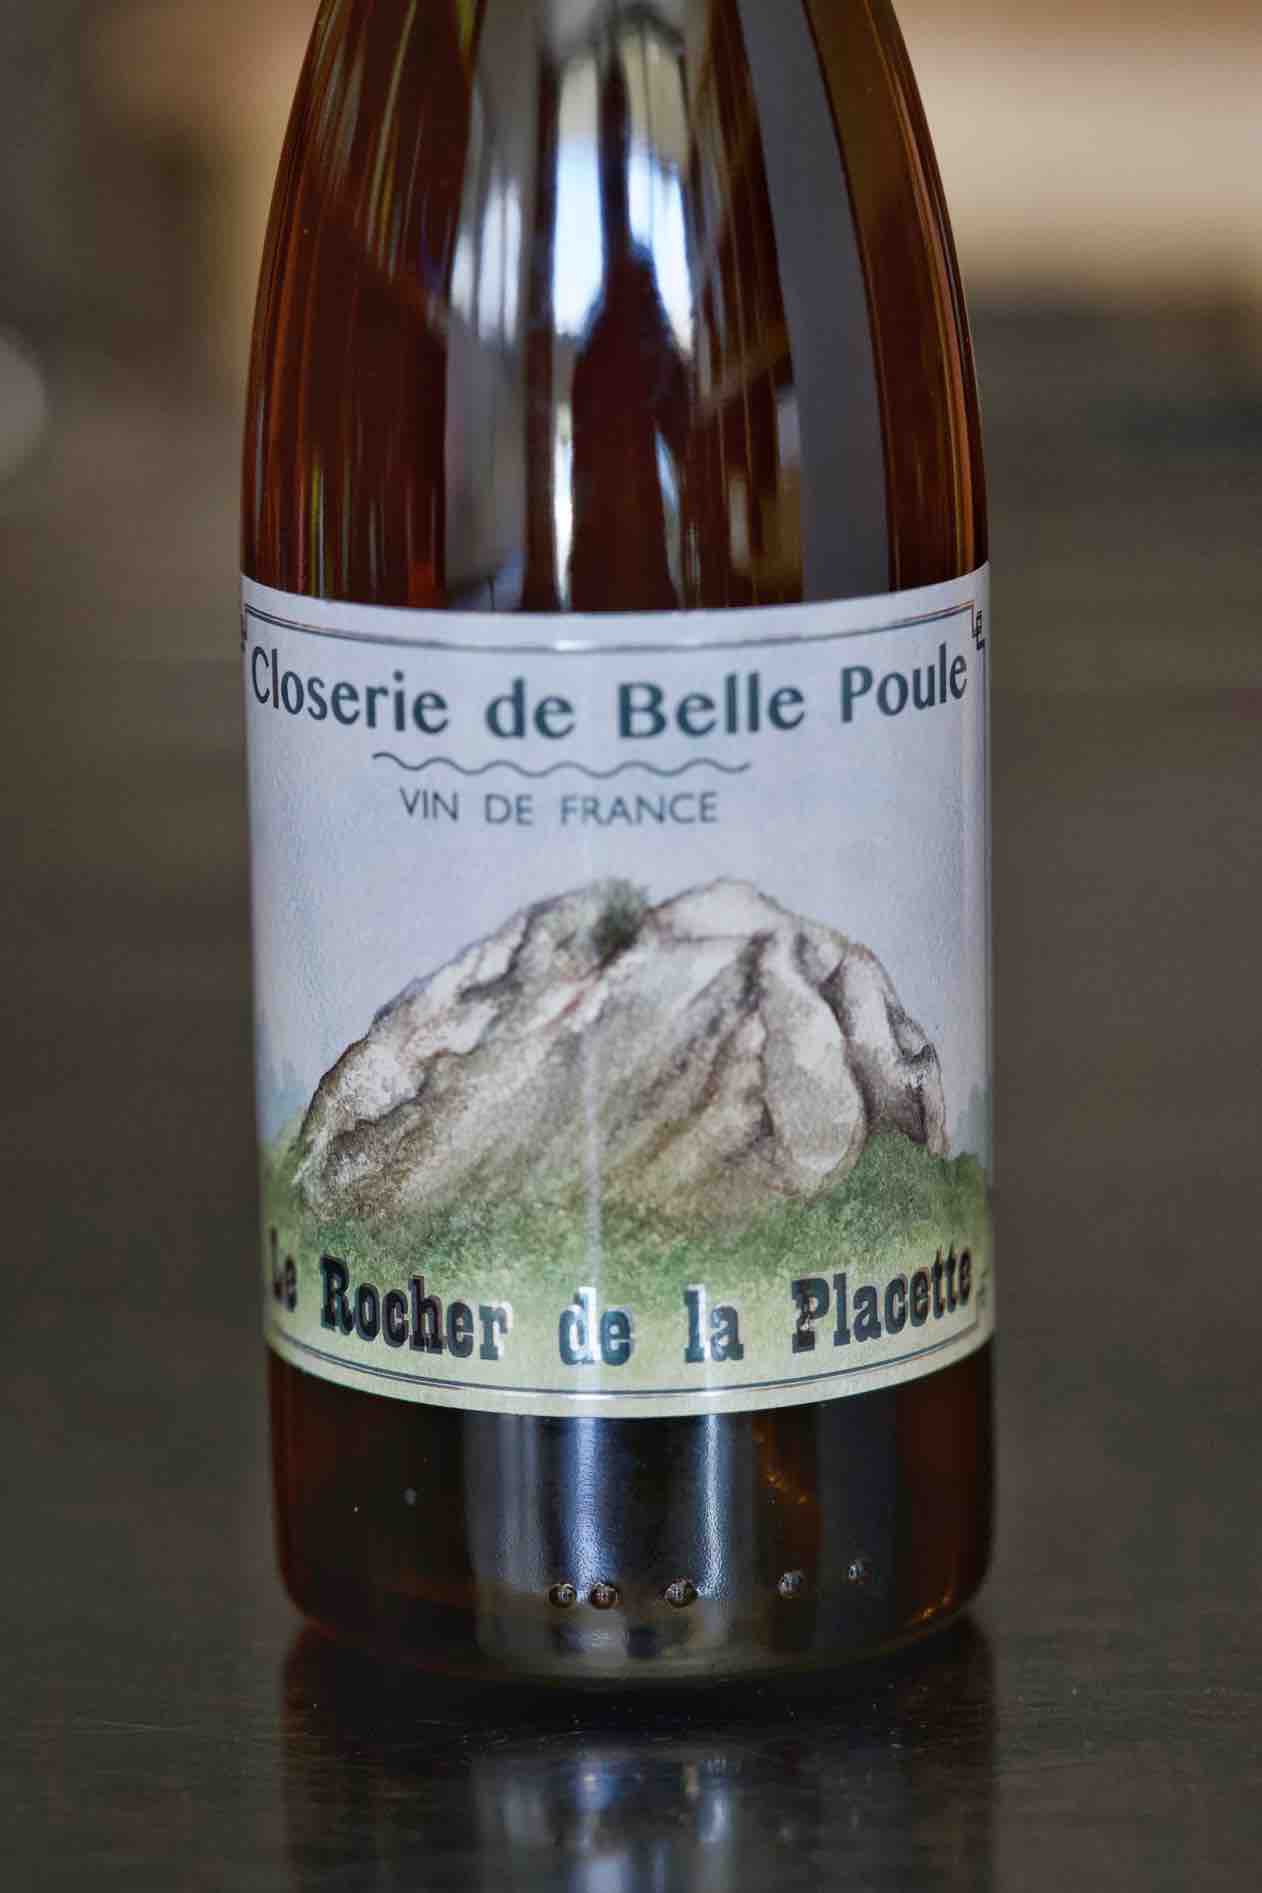 Closerie de Belle Poule Vin de France White "Le Rocher de la Placette" 2018